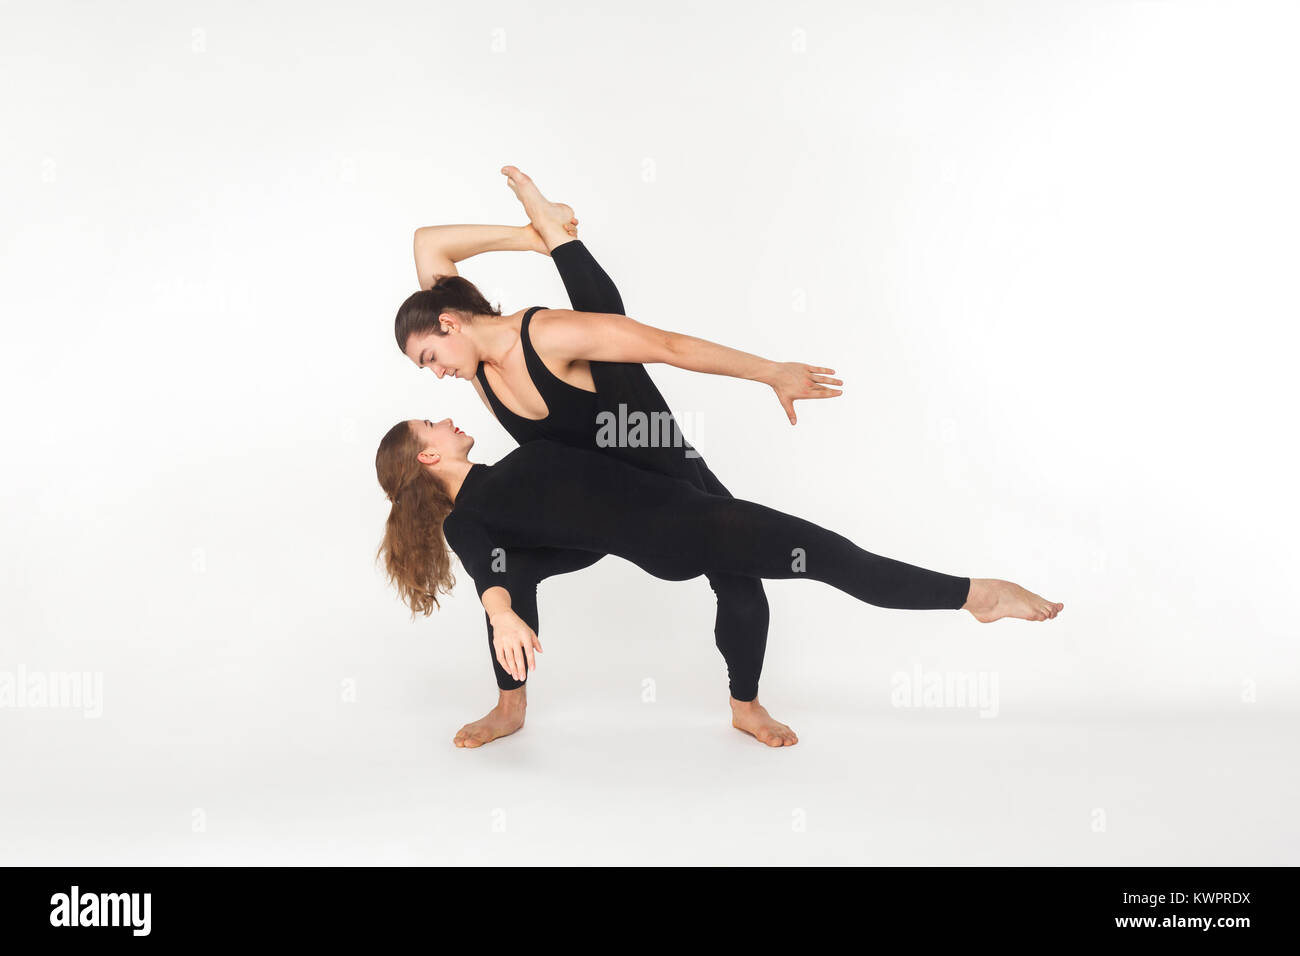 Zwei Flexibilität Freunde tanzen, tut der Leistung. Studio shot, auf weißem Hintergrund Stockfoto